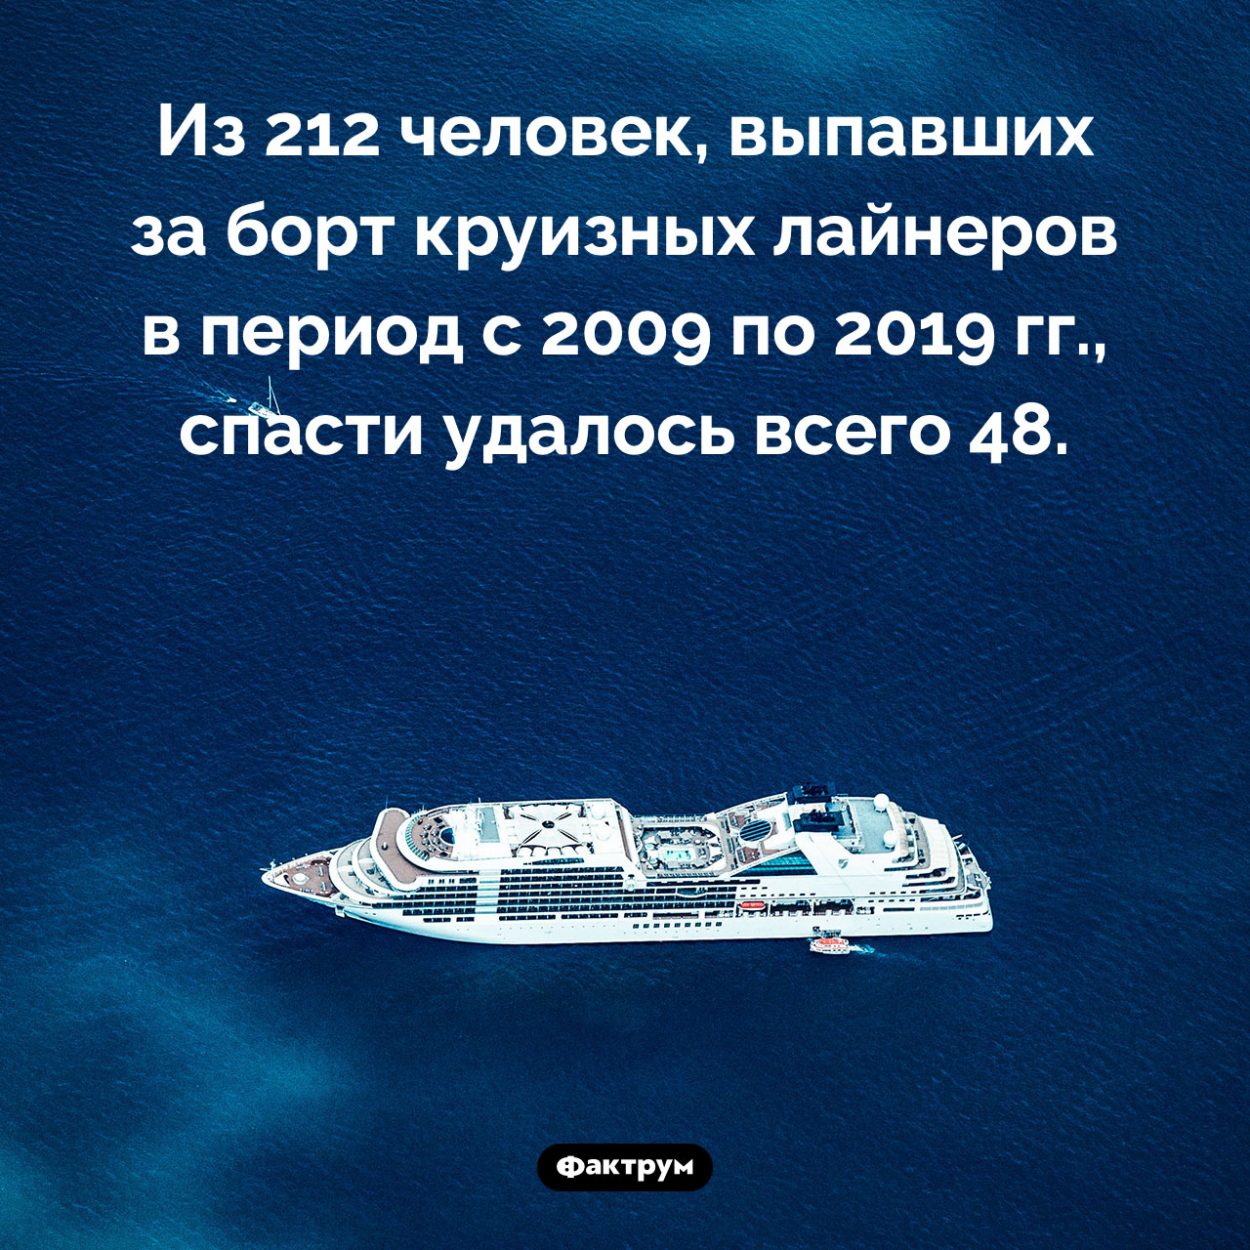 Как часто спасают выпавших за борт. Из 212 человек, выпавших за борт круизных лайнеров в период с 2009 по 2019 гг., спасти удалось всего 48.